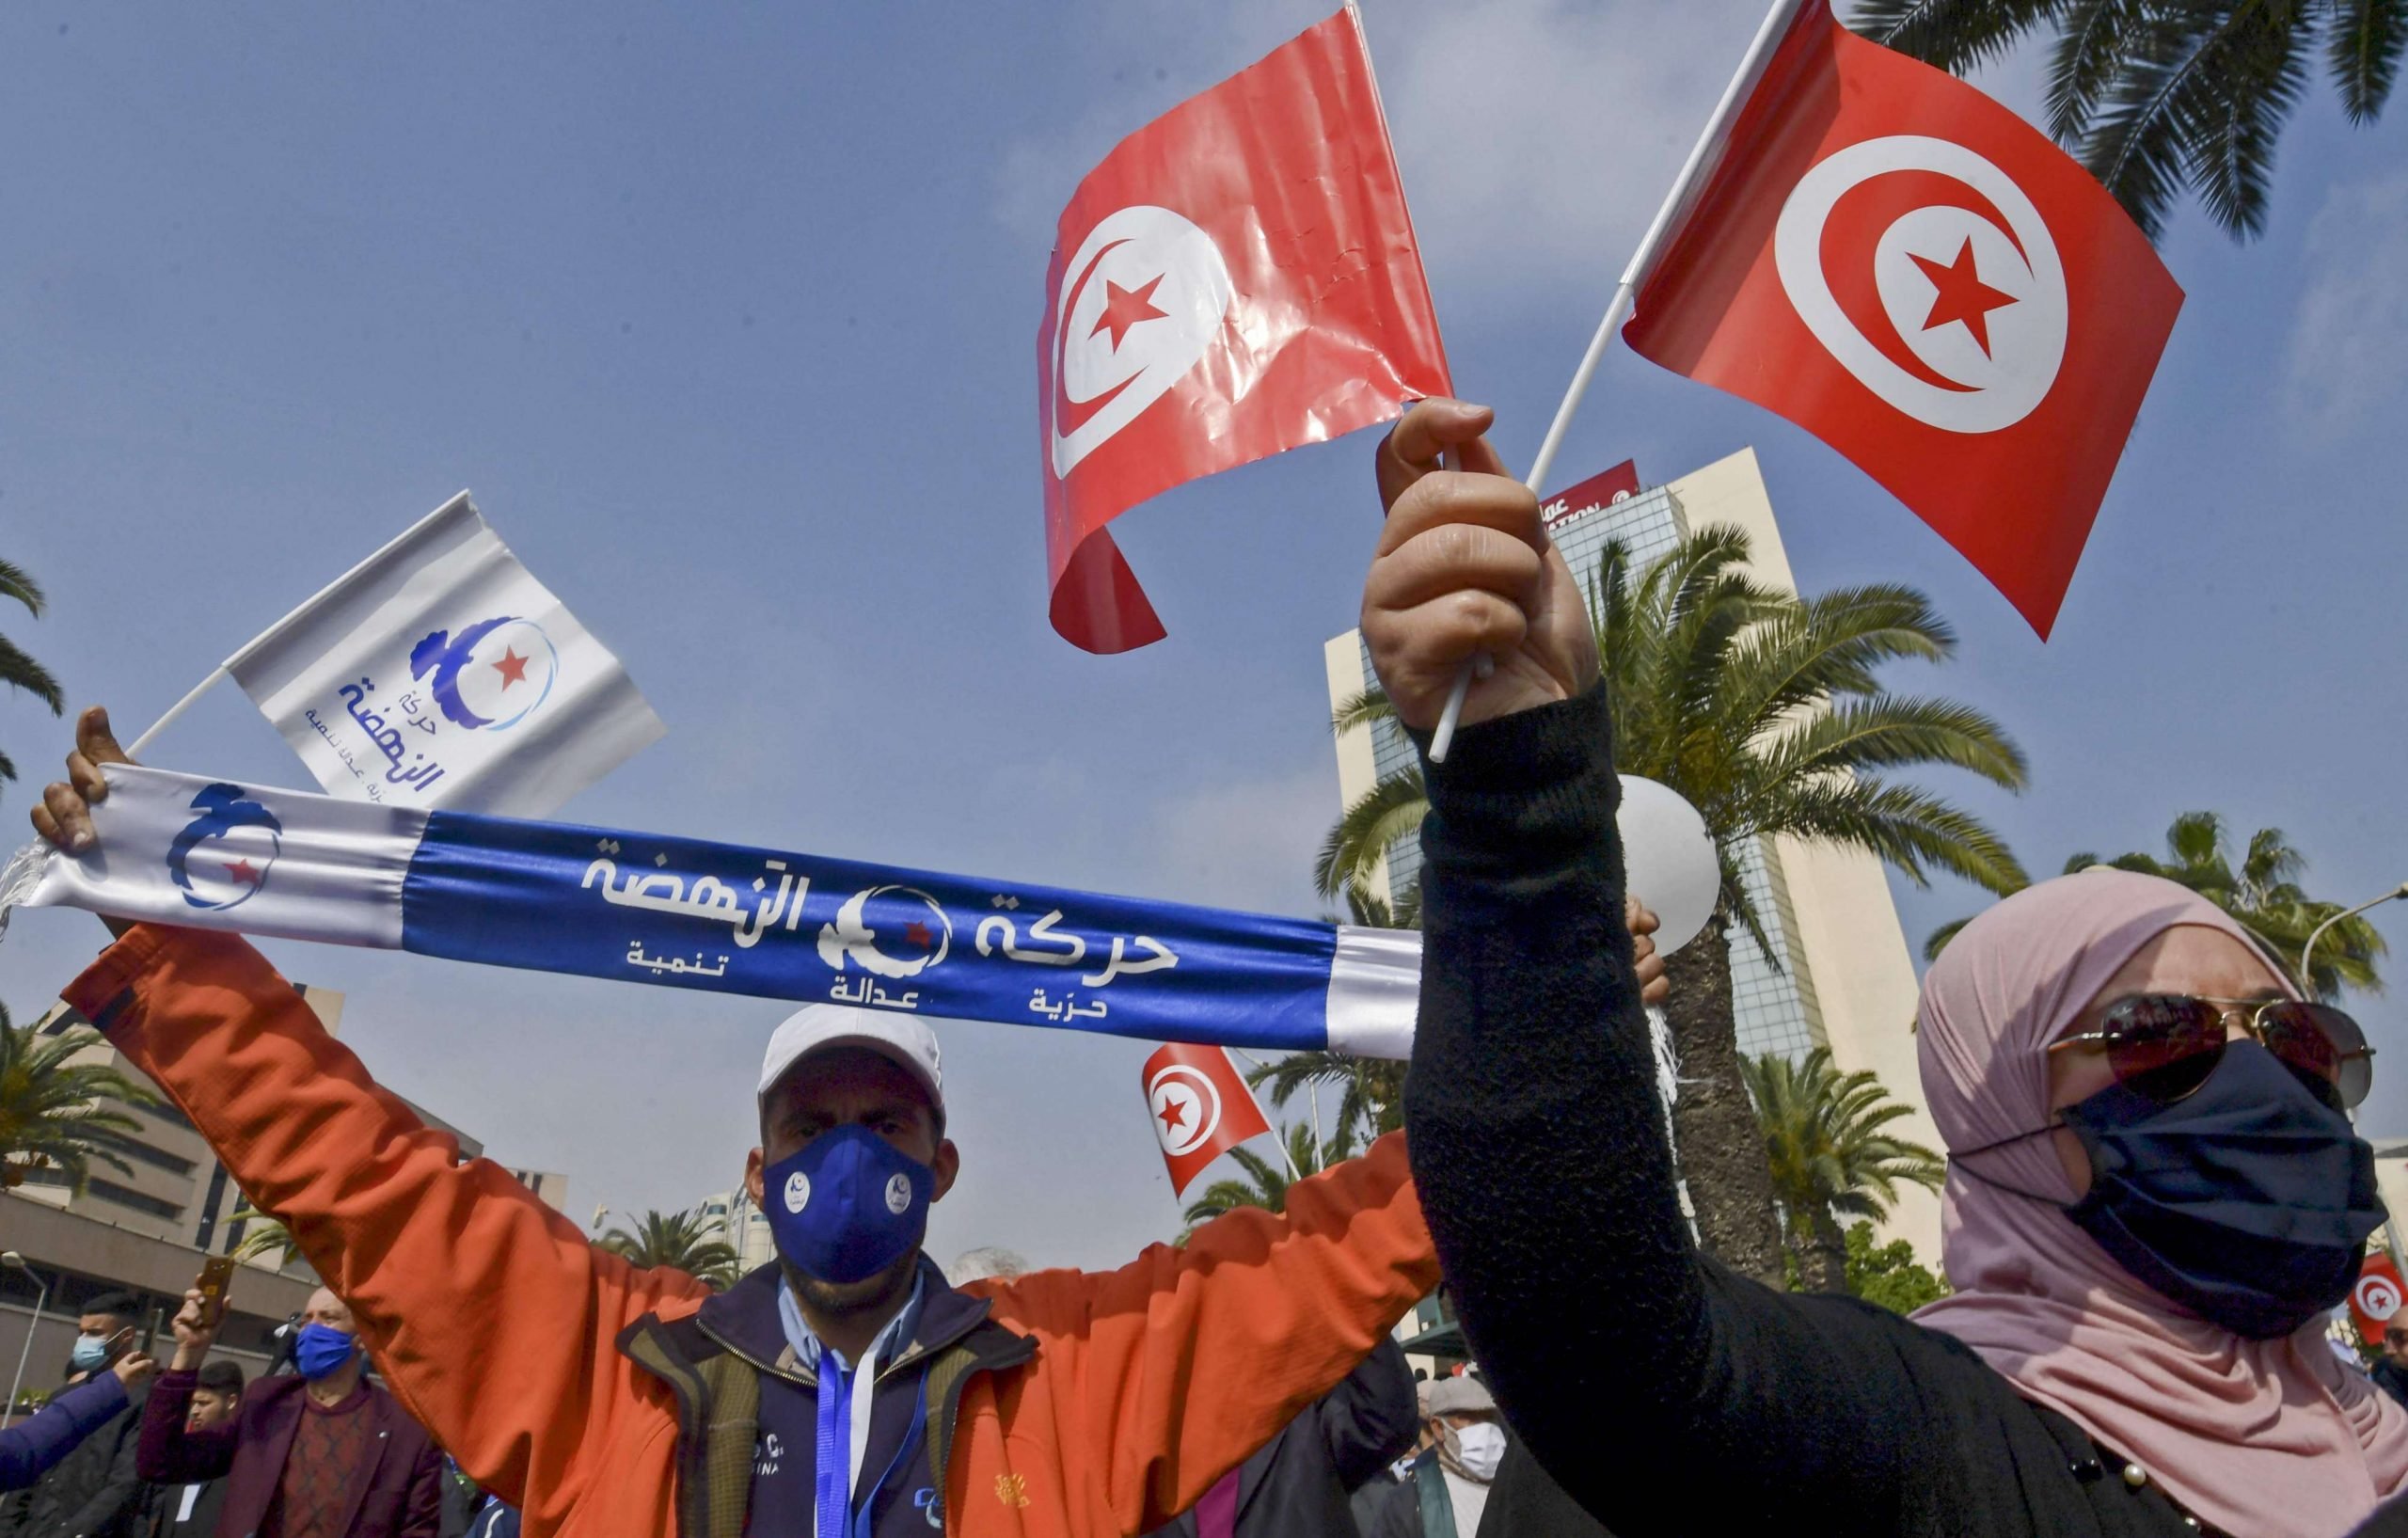 النهضة التونسية تدعو مكتب البرلمان لعقد اجتماع عاجل حول “تدابير الرئيس”